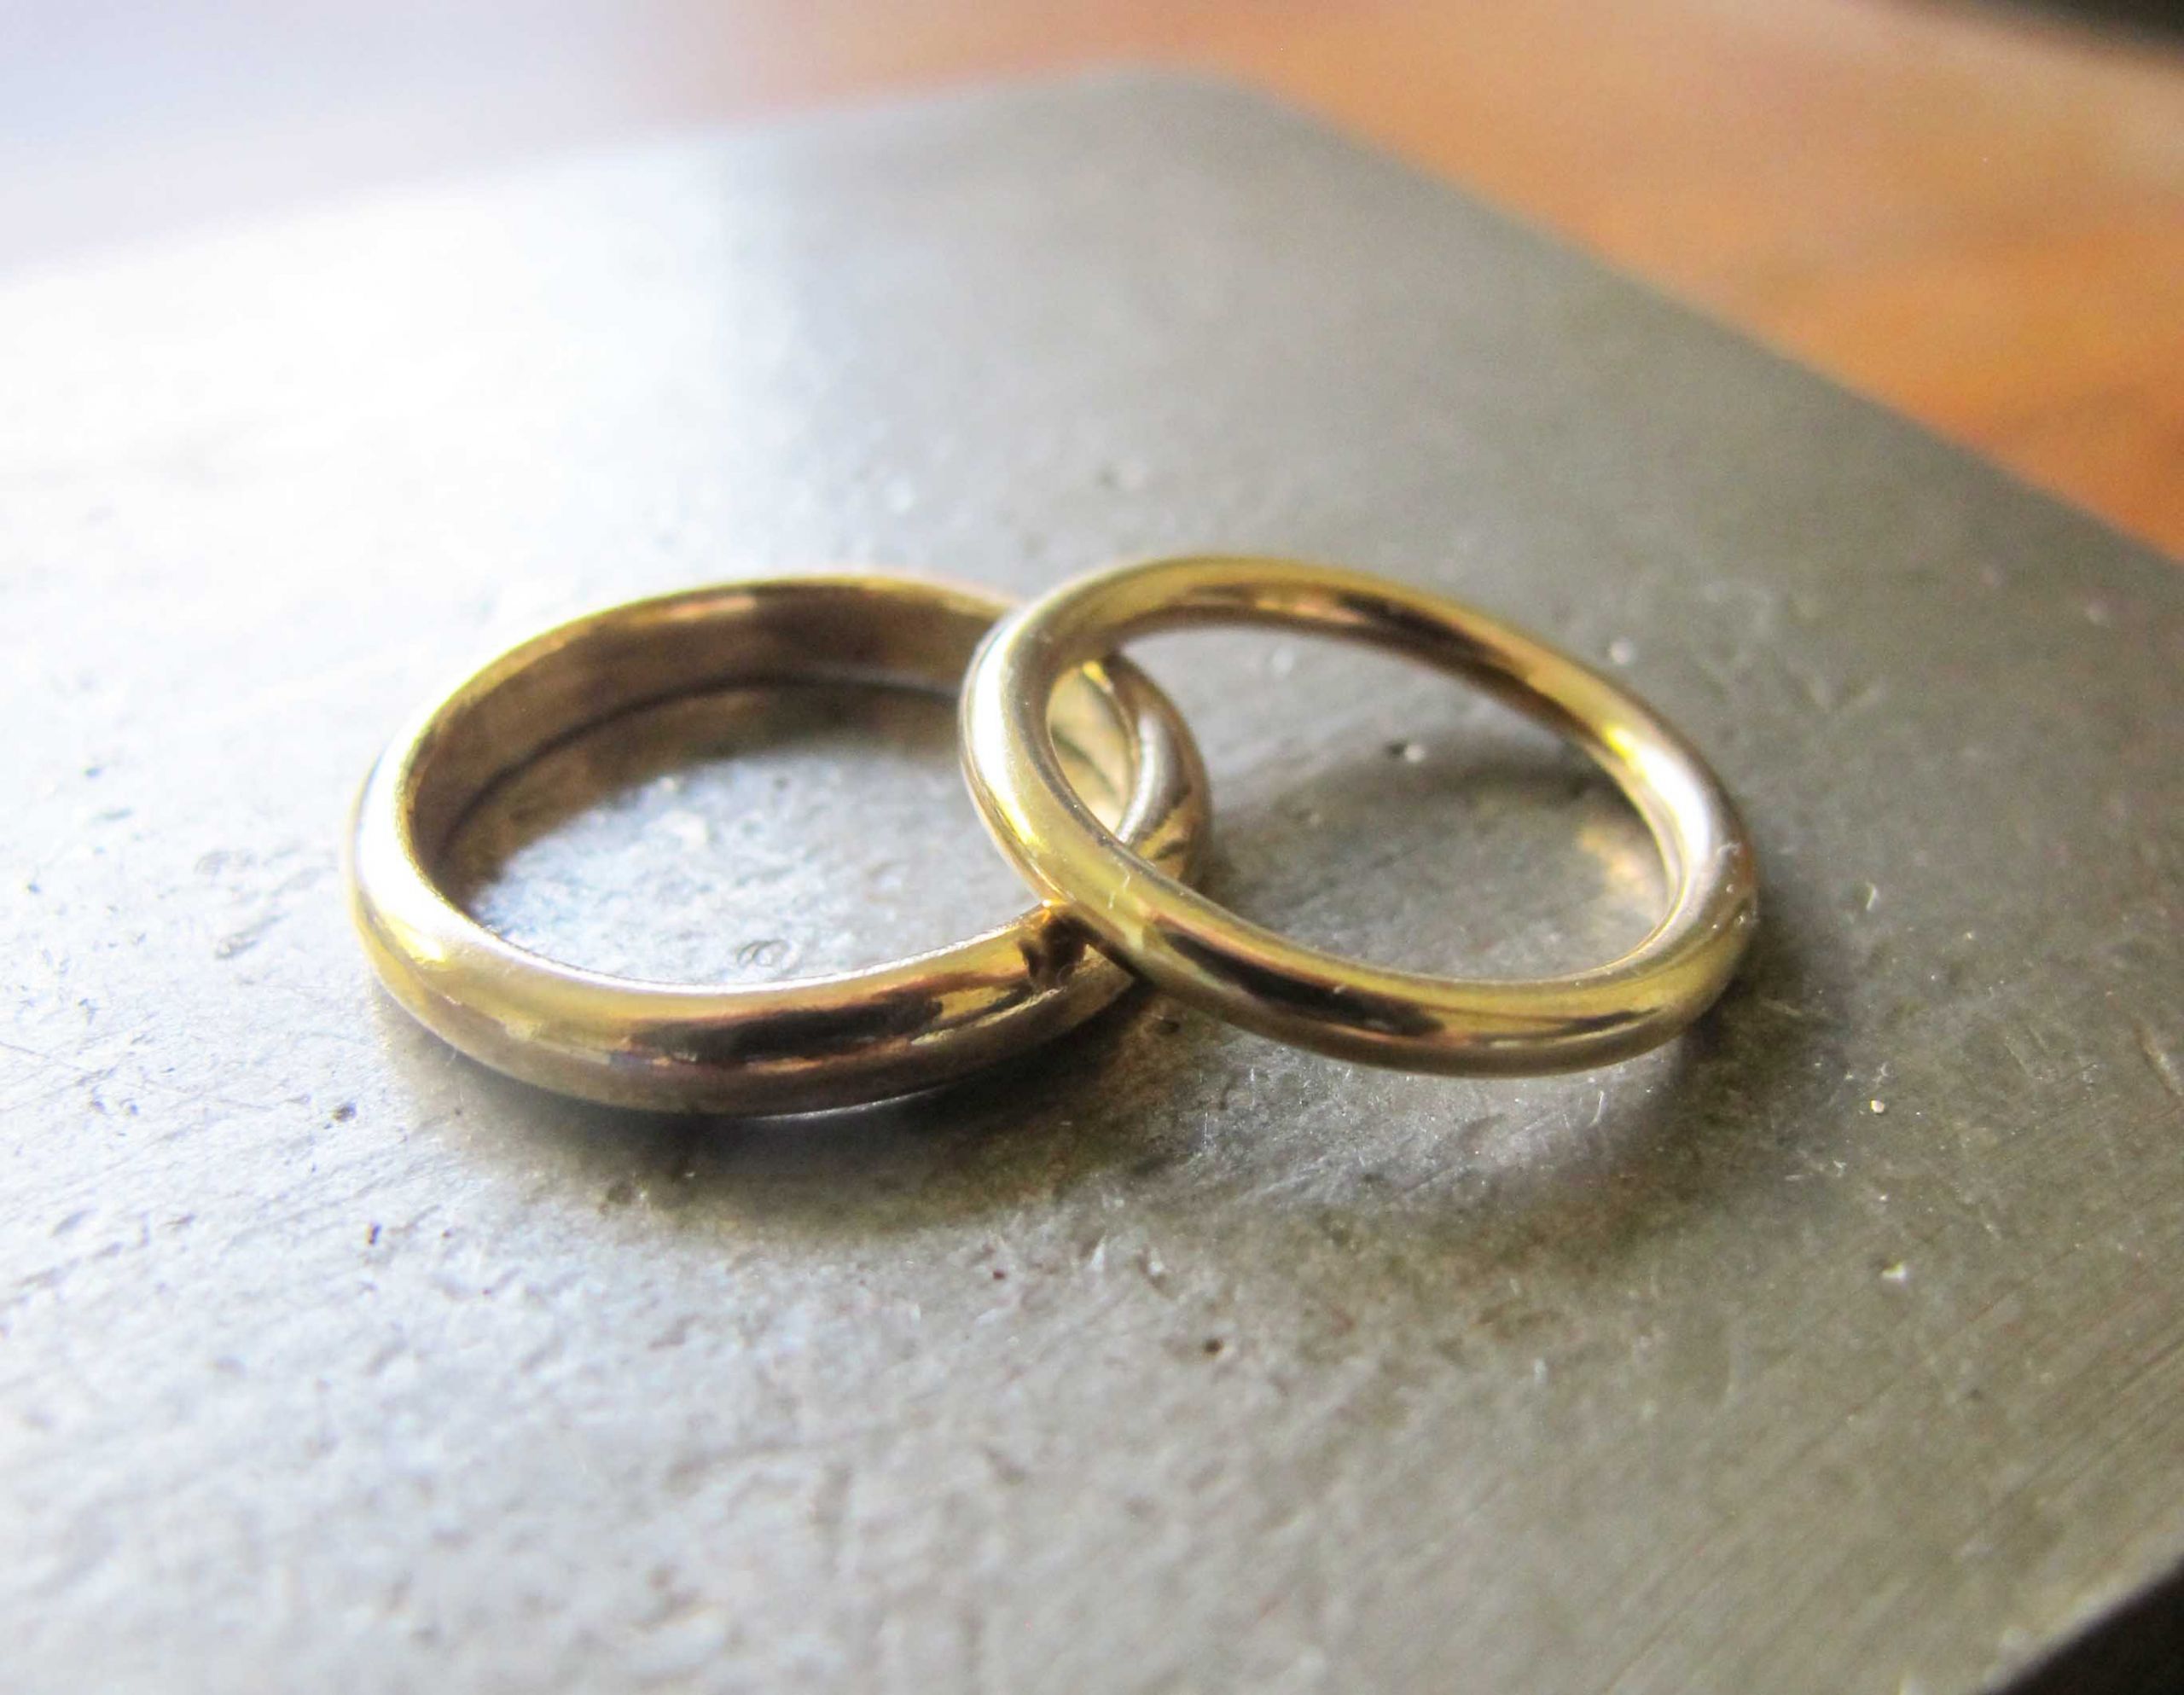 Make Your Own Wedding Ring
 Make your own wedding rings